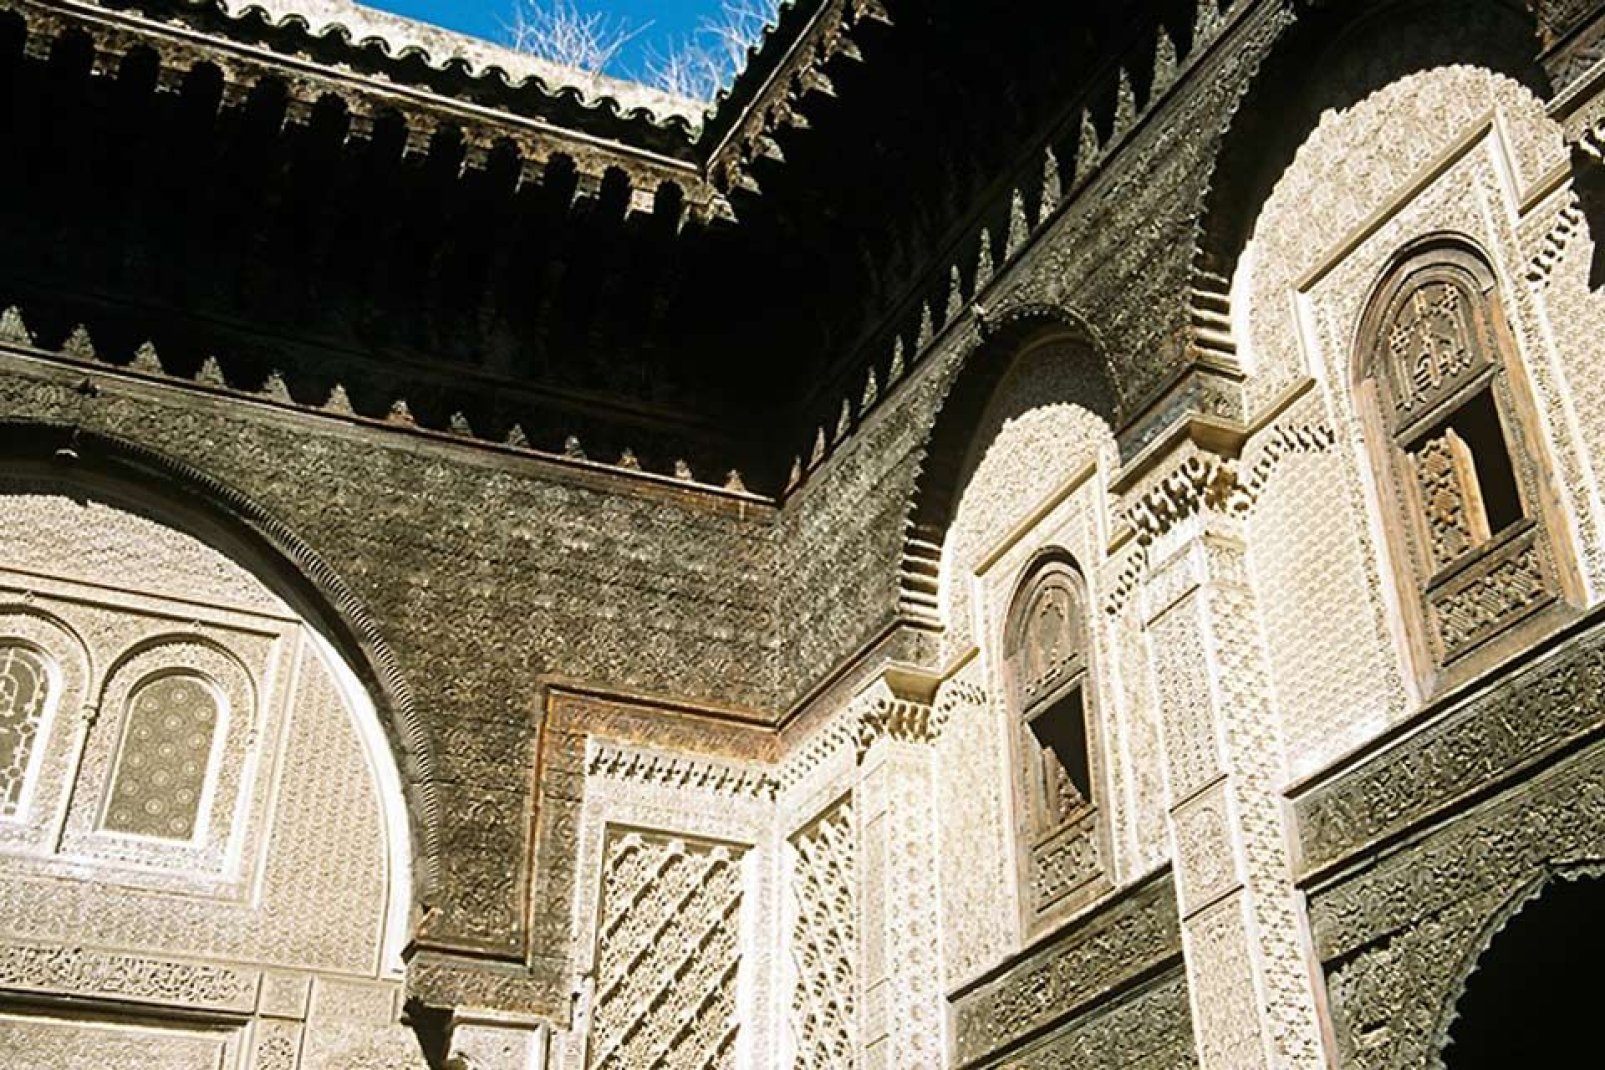 El palacio real de Mequinez, Al Mhancha, se construyó a principios del siglo XVIII y se encuentra en el centro de la kasbah ismailista.